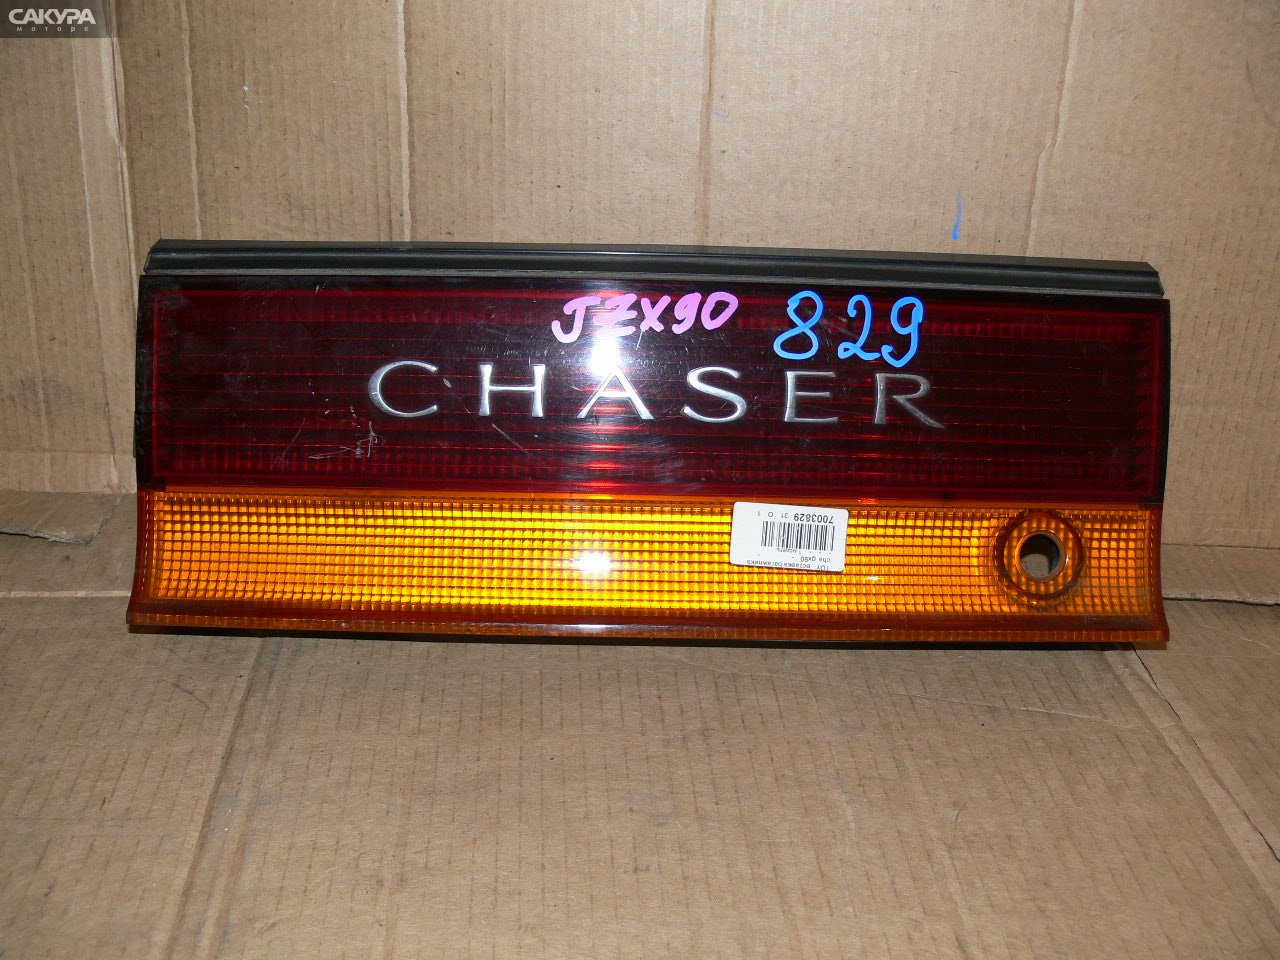 Фонарь вставка багажника Toyota Chaser GX90: купить в Сакура Иркутск.